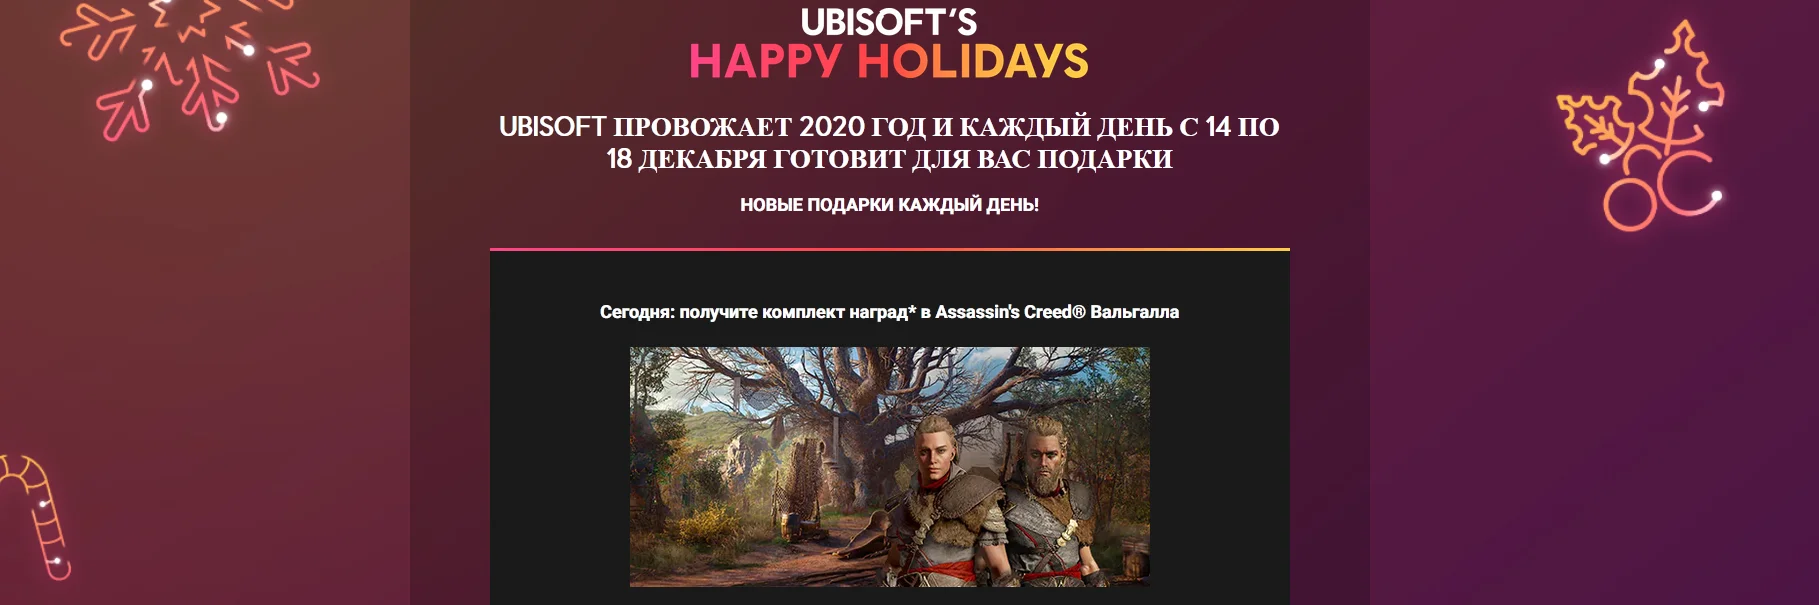 Ubisoft раздает новогодние подарки всем игрокам - фото 1